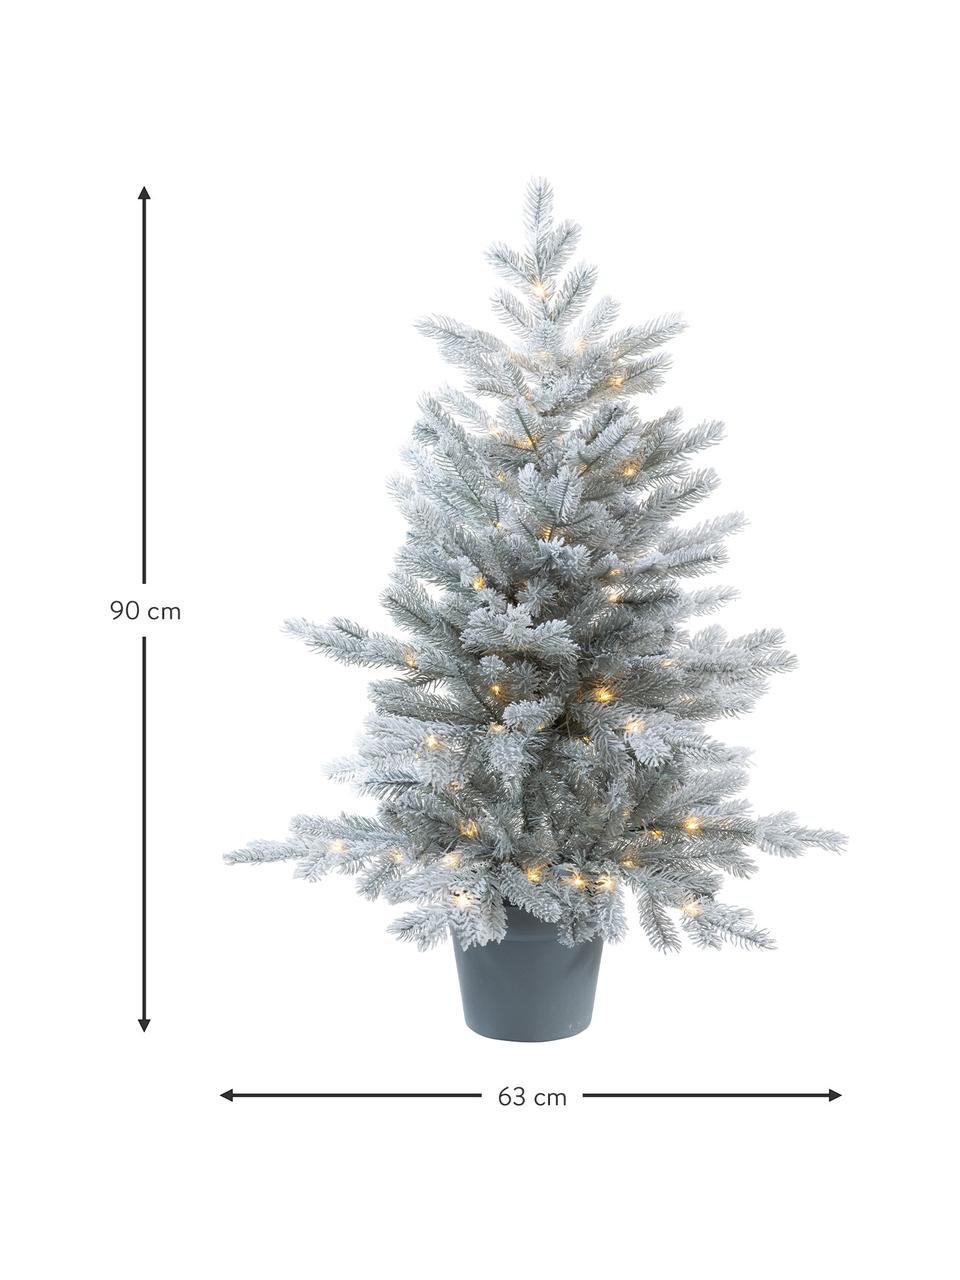 Umelý LED vianočný stromček Grandis V 90 cm, zasnežený, Plast (PVC), Zelená, biela, Ø 63 x V 90 cm